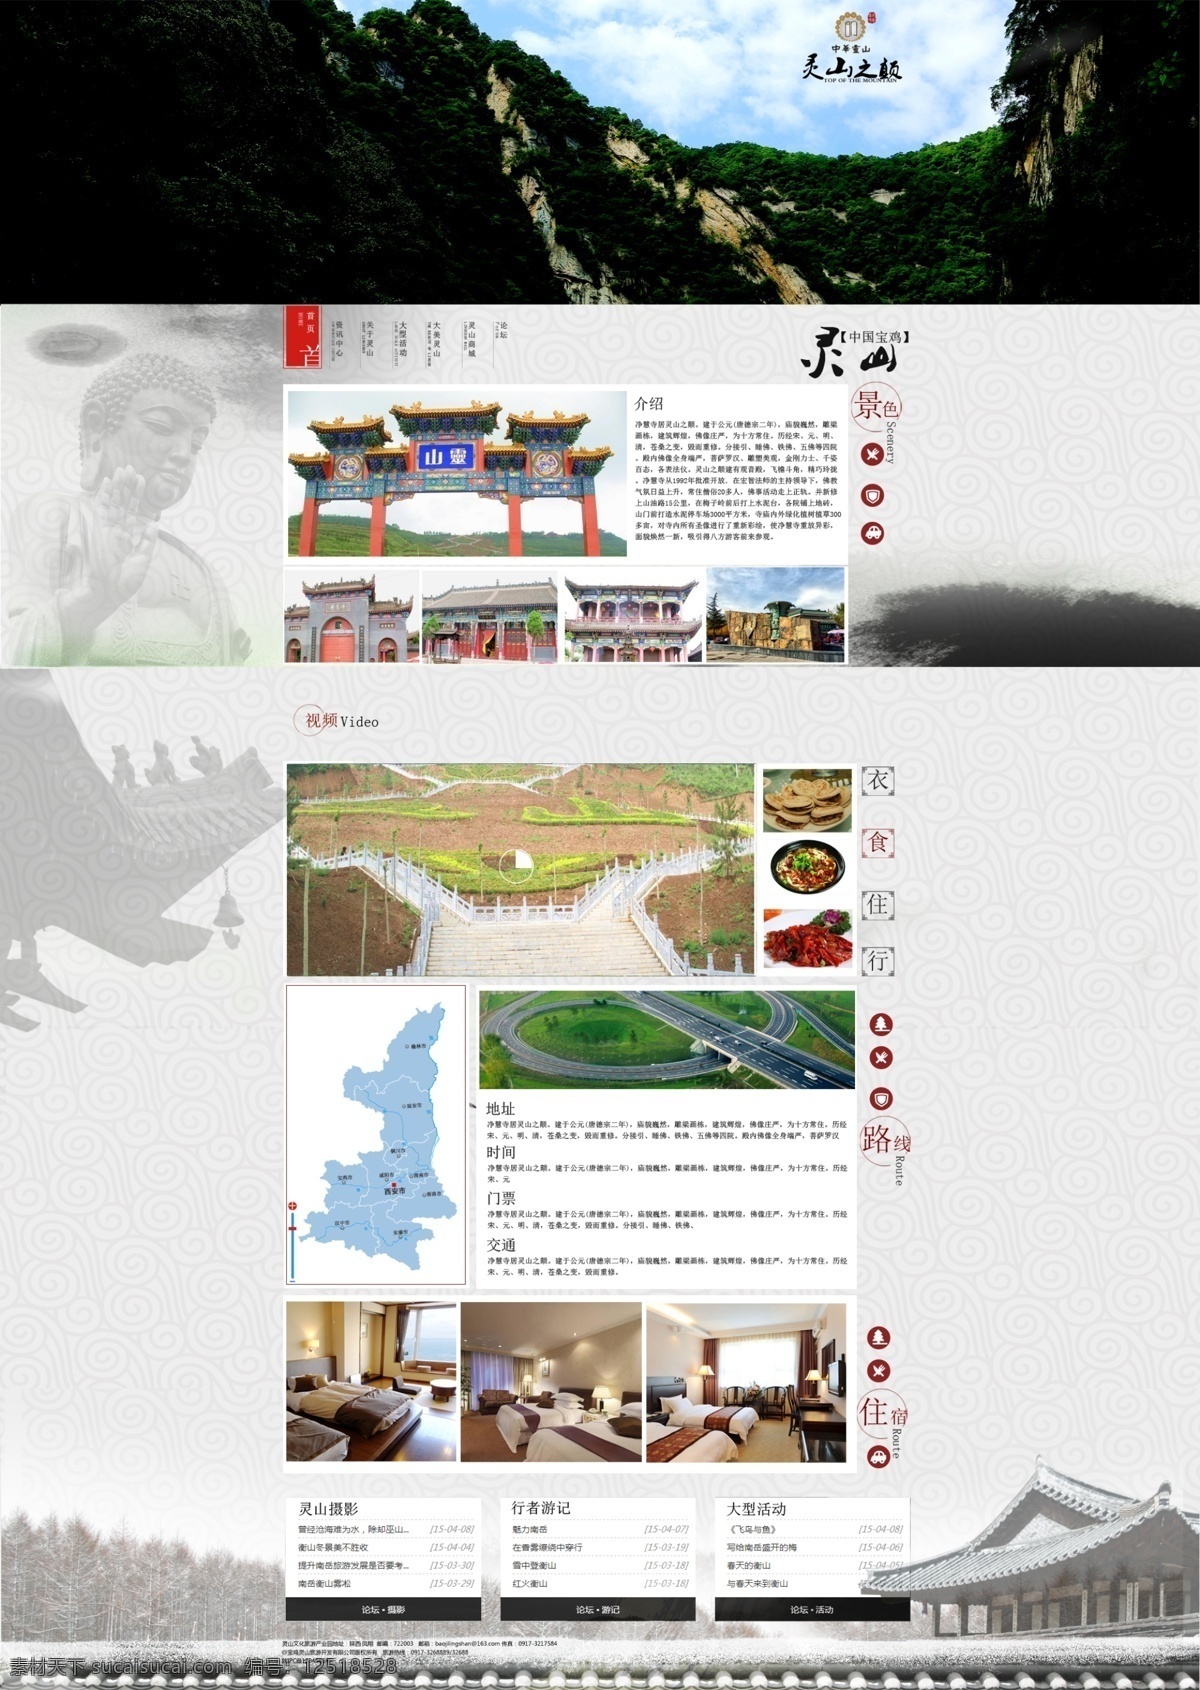 佛山 旅游文化 佛教文化 灵山 中国 旅游 网页设计 原创设计 原创网页设计